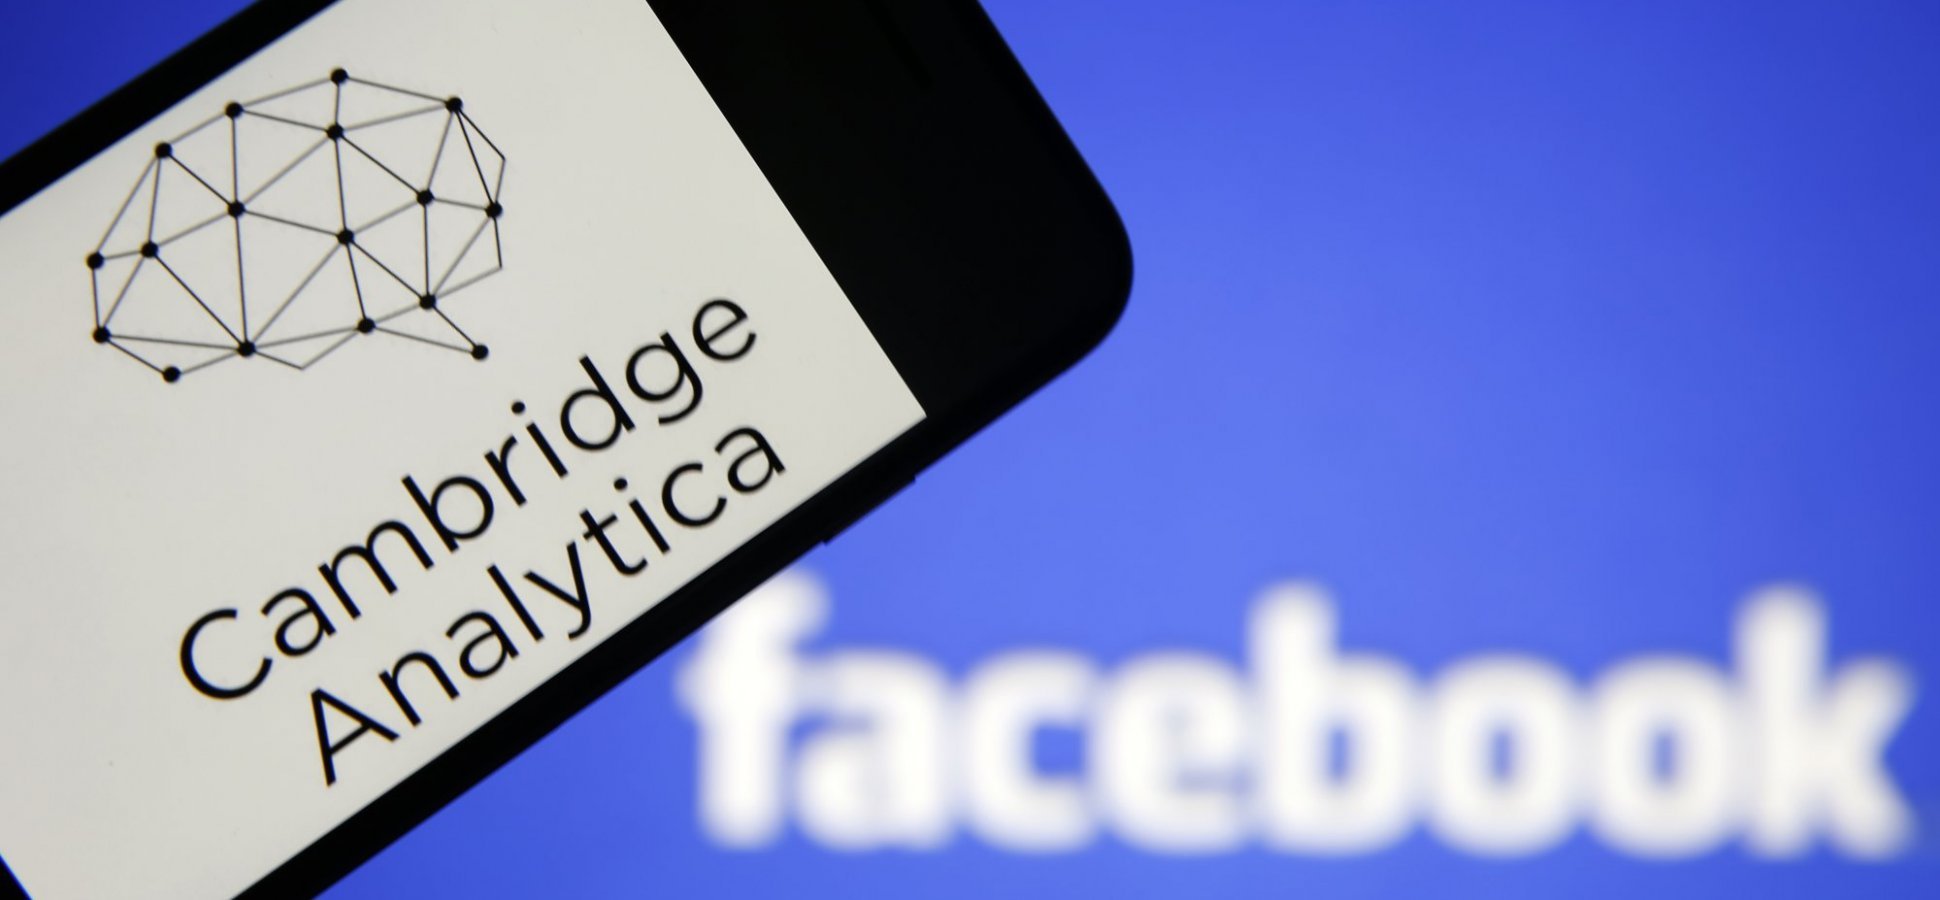  Amendă de 5 miliarde de dolari pentru Facebook în scandalul Cambridge Analytica